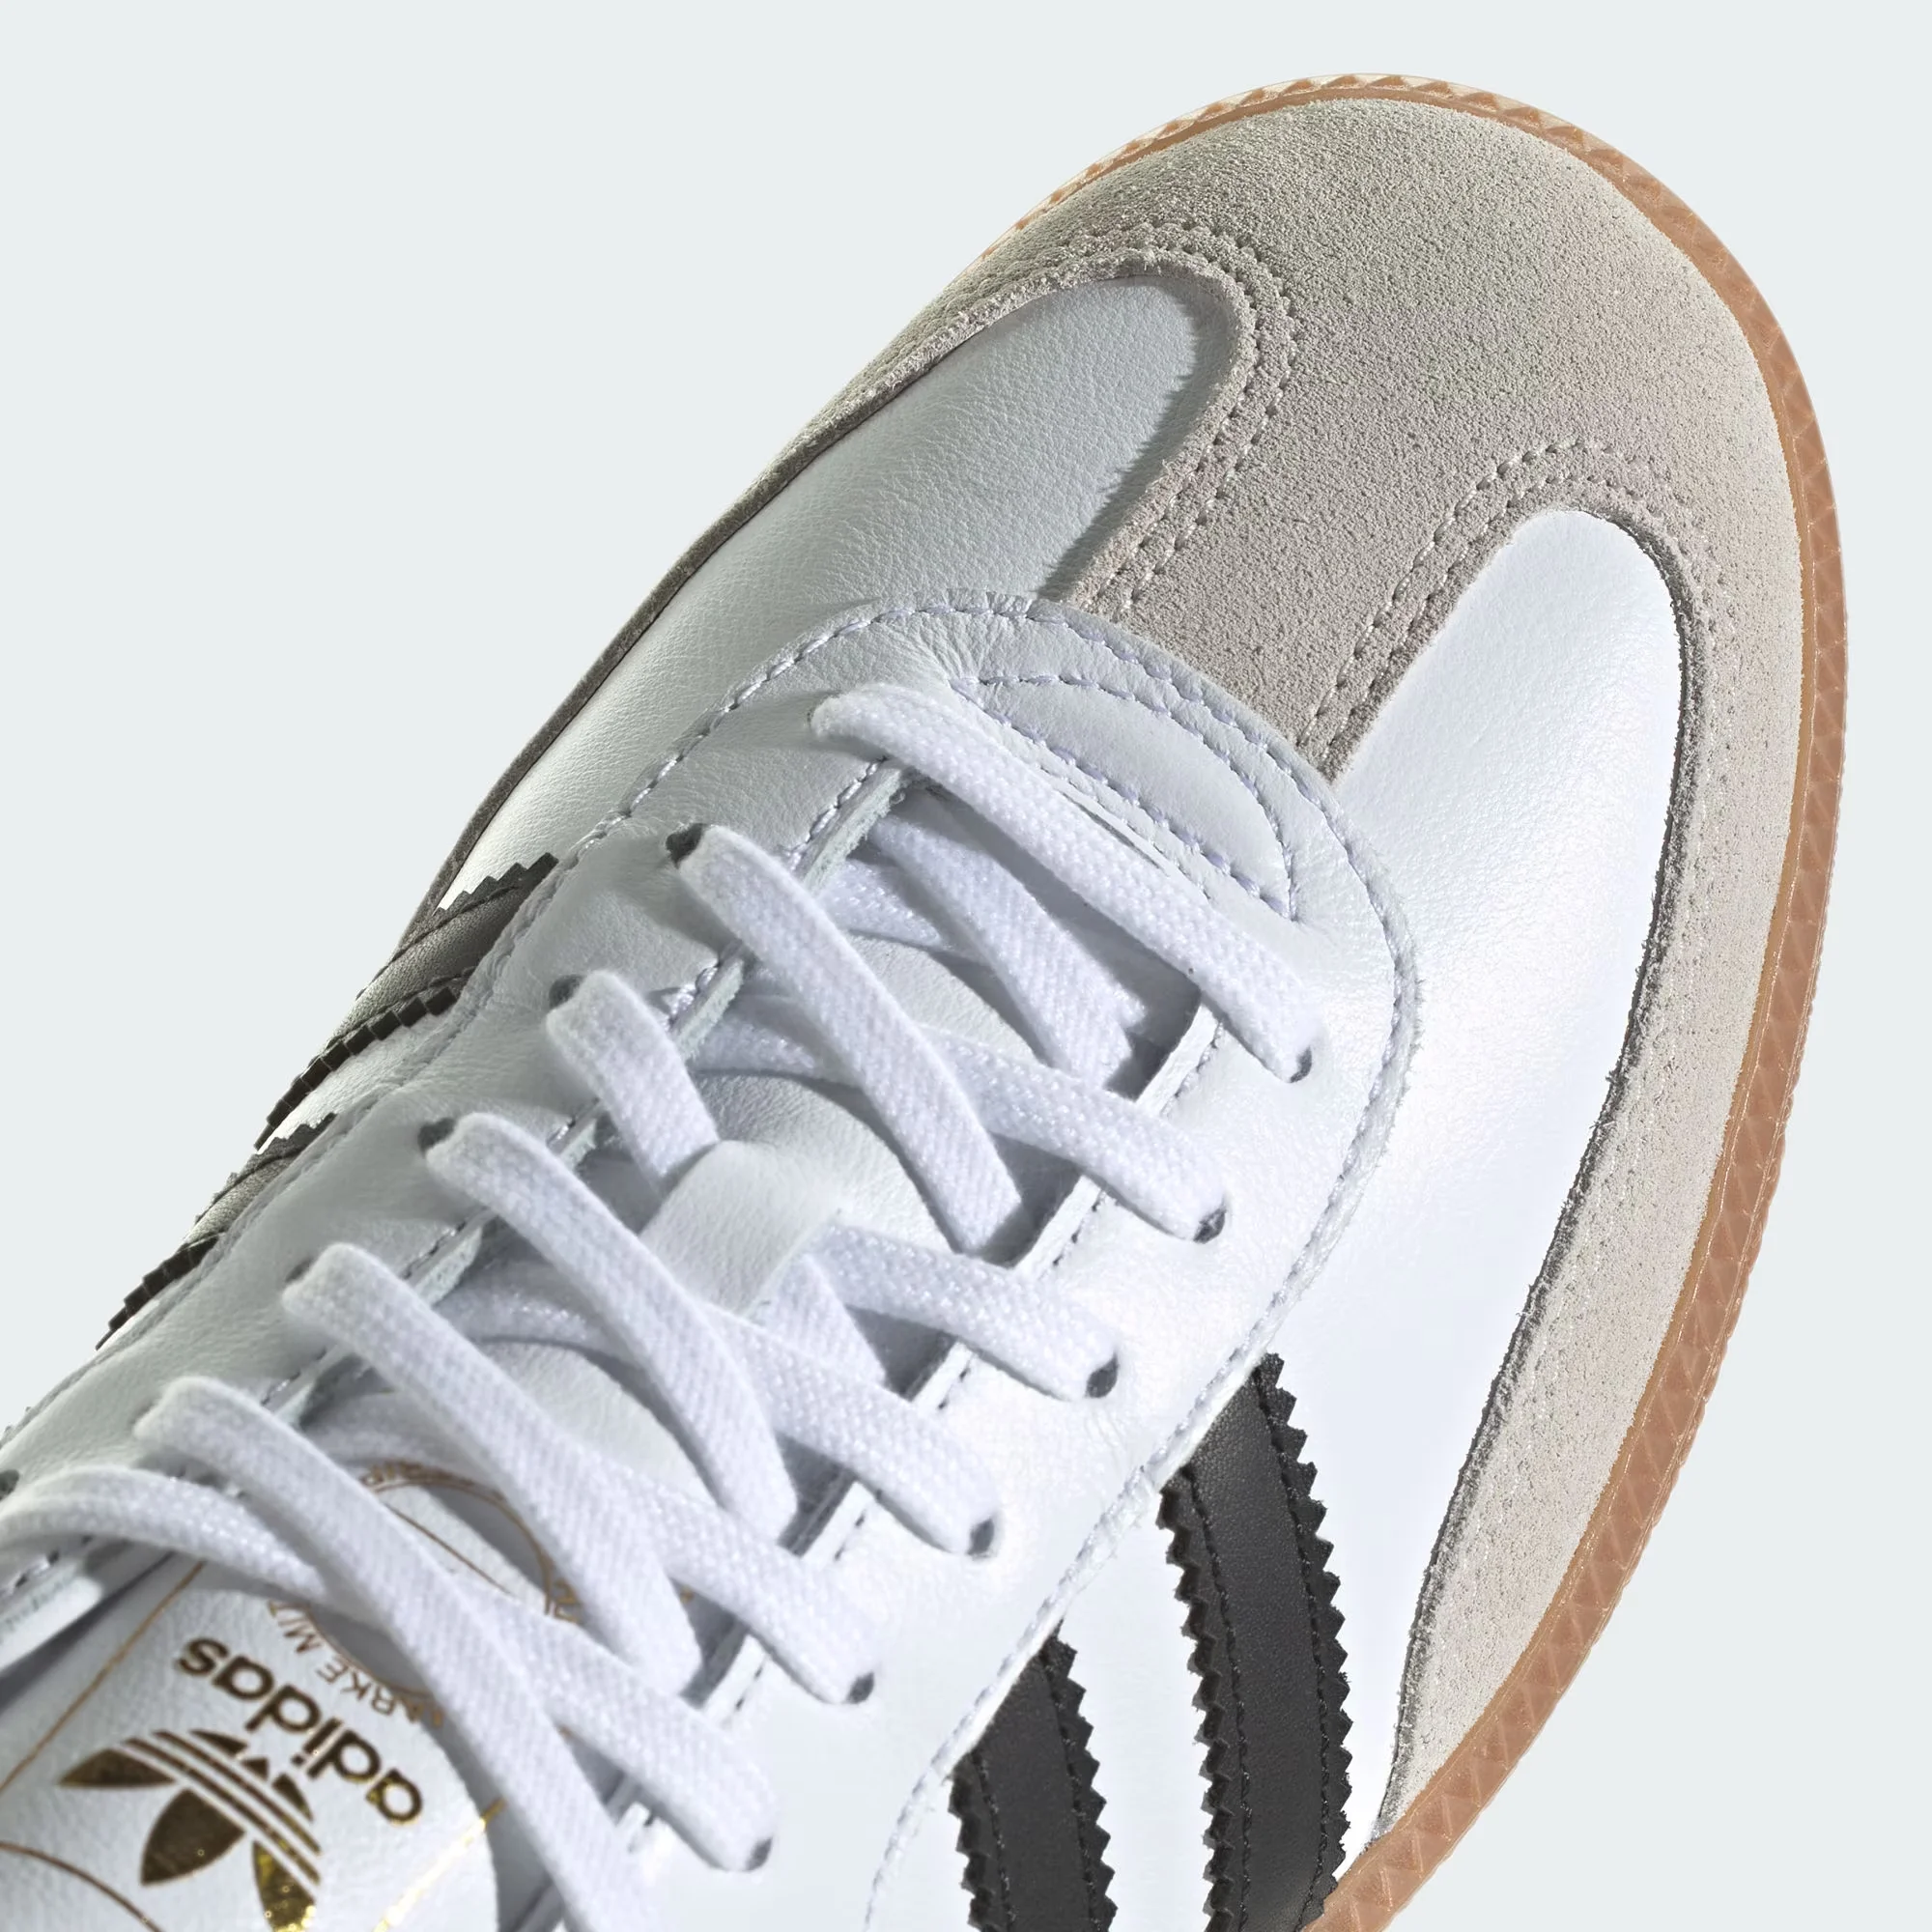 Adidas-zapatillas de entrenamiento clásicas de Samba OG para hombre y mujer, zapatos informales de diseño de lujo, trébol